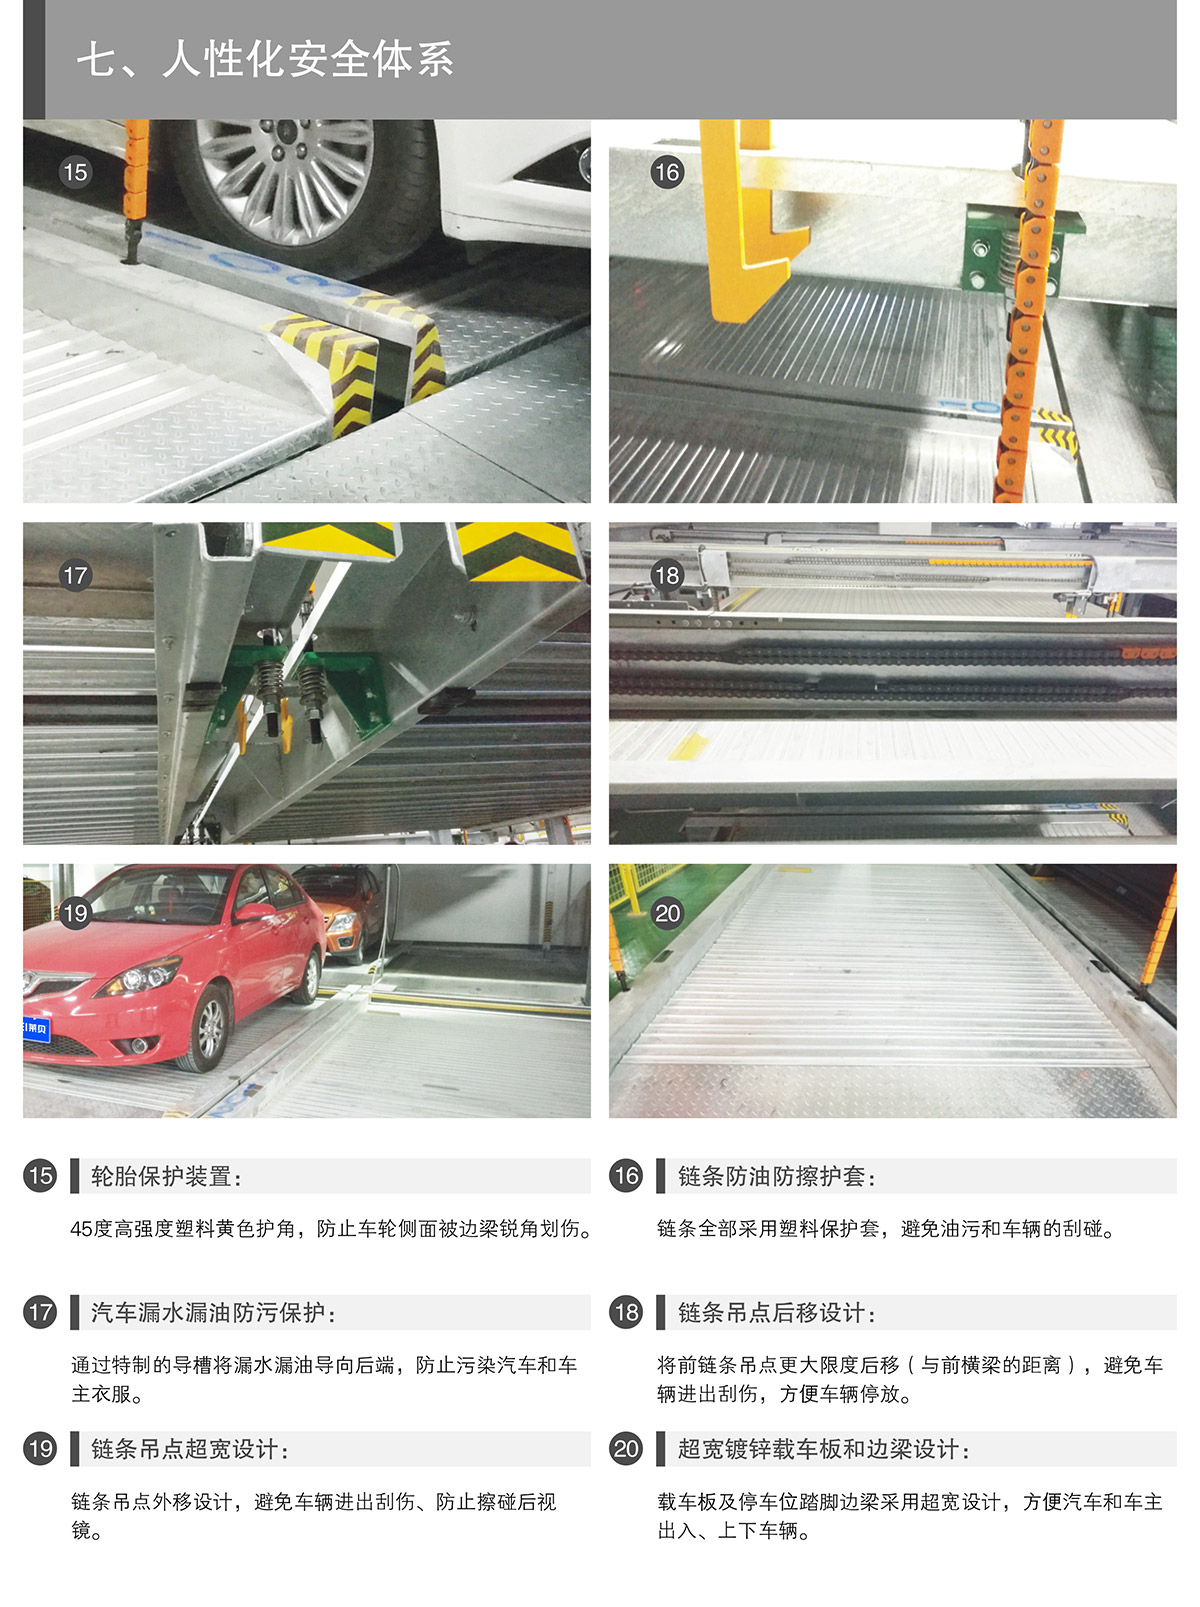 四川PSH2二层升降横移立体停车设备人性化安全体系.jpg